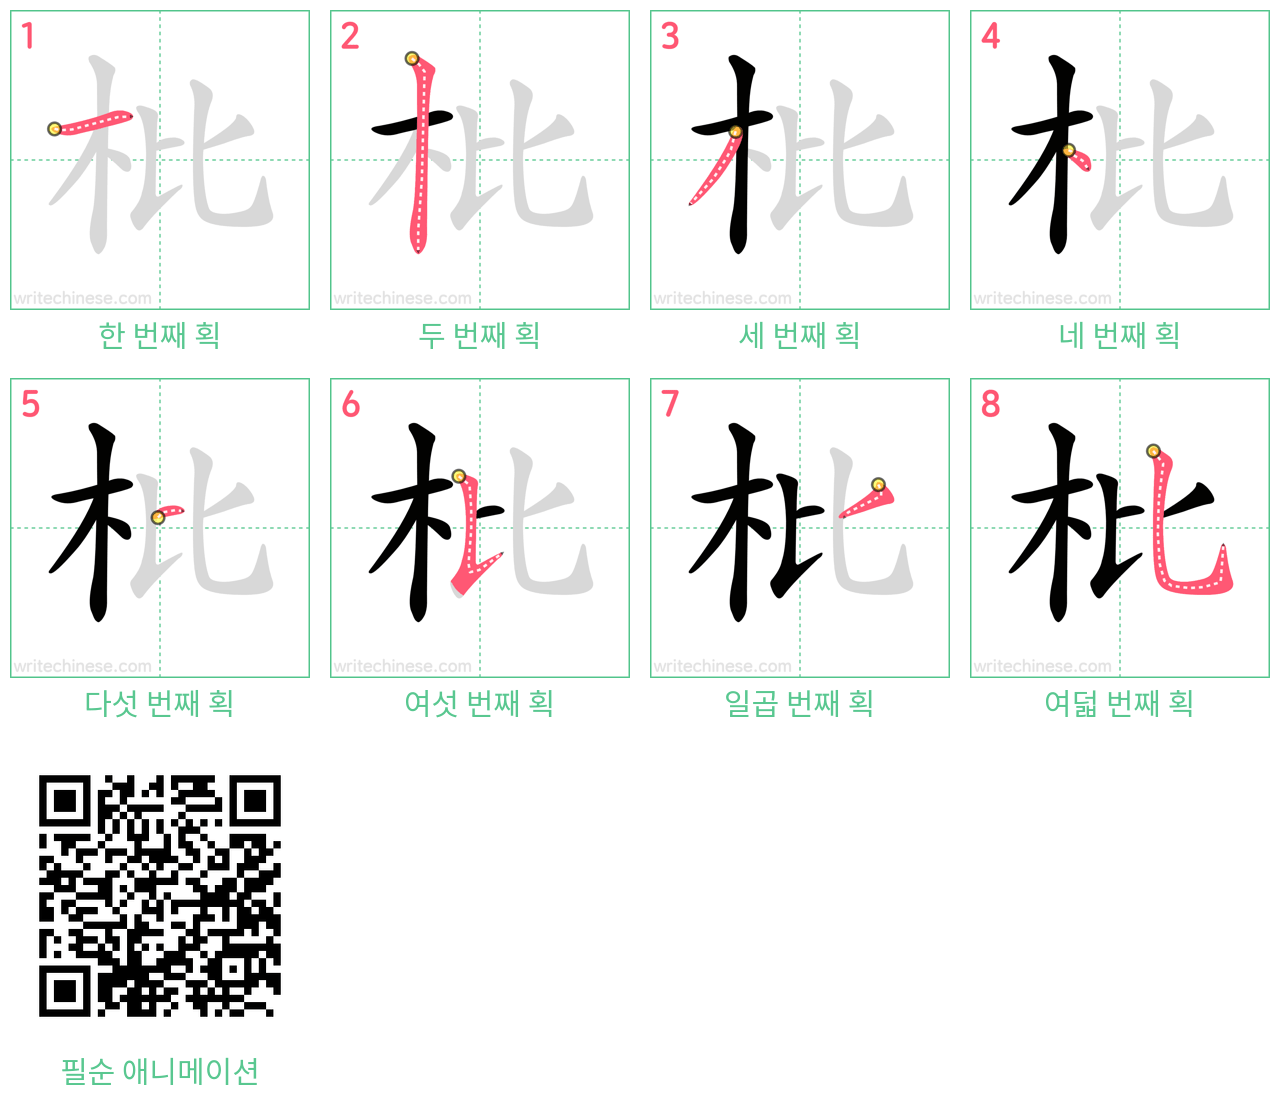 枇 step-by-step stroke order diagrams